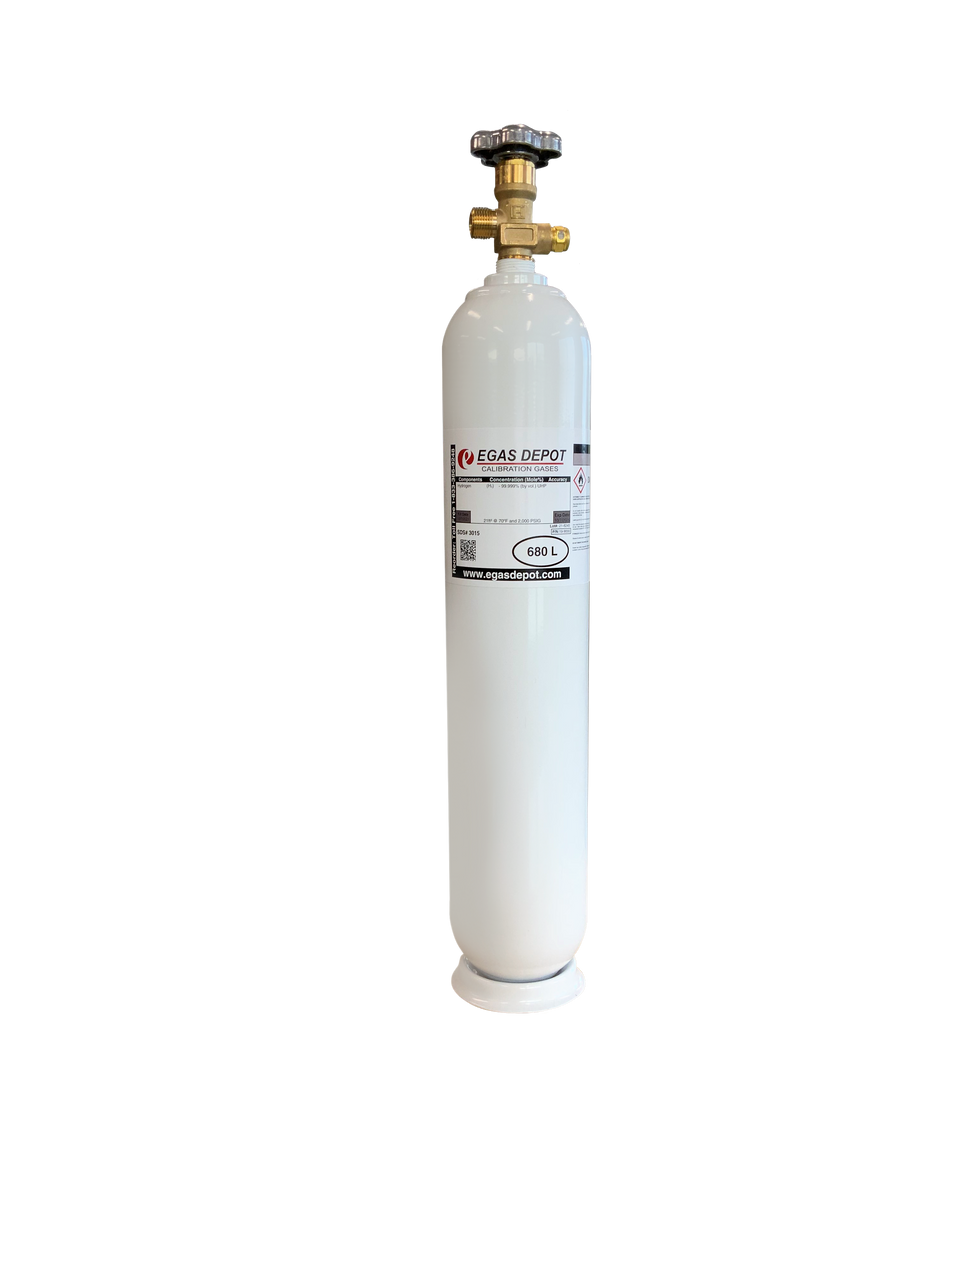 CH4 5 ppm/ Air 680 Liter calibration gas